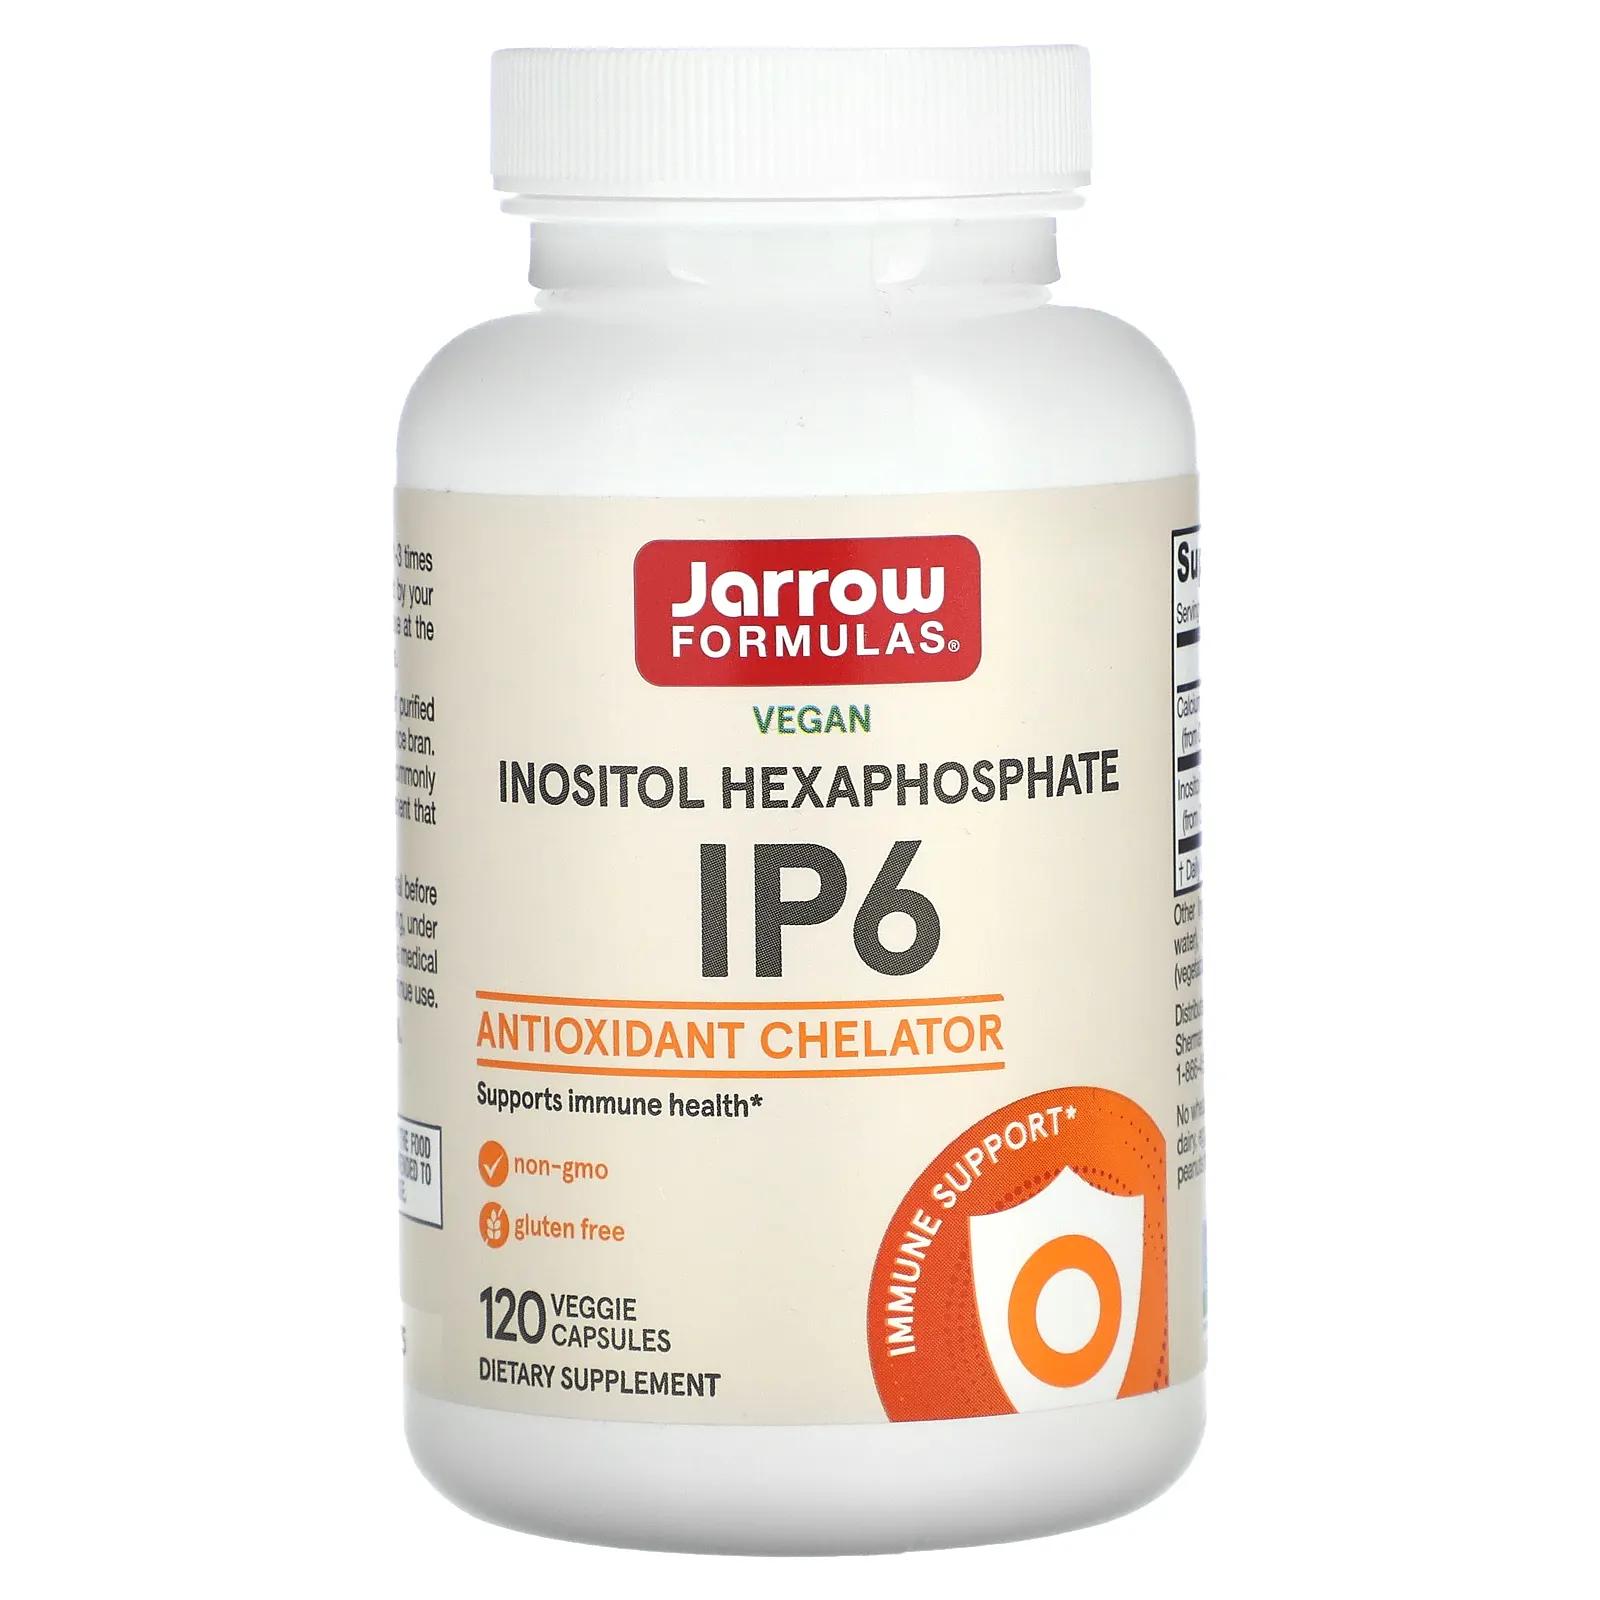 Jarrow Formulas IP6 инозитол гексафосфат 500 мг 120 капсул в растительной оболочке ip6 гексафосфат инозитола 500 мг 120 растительных капсул jarrow formulas